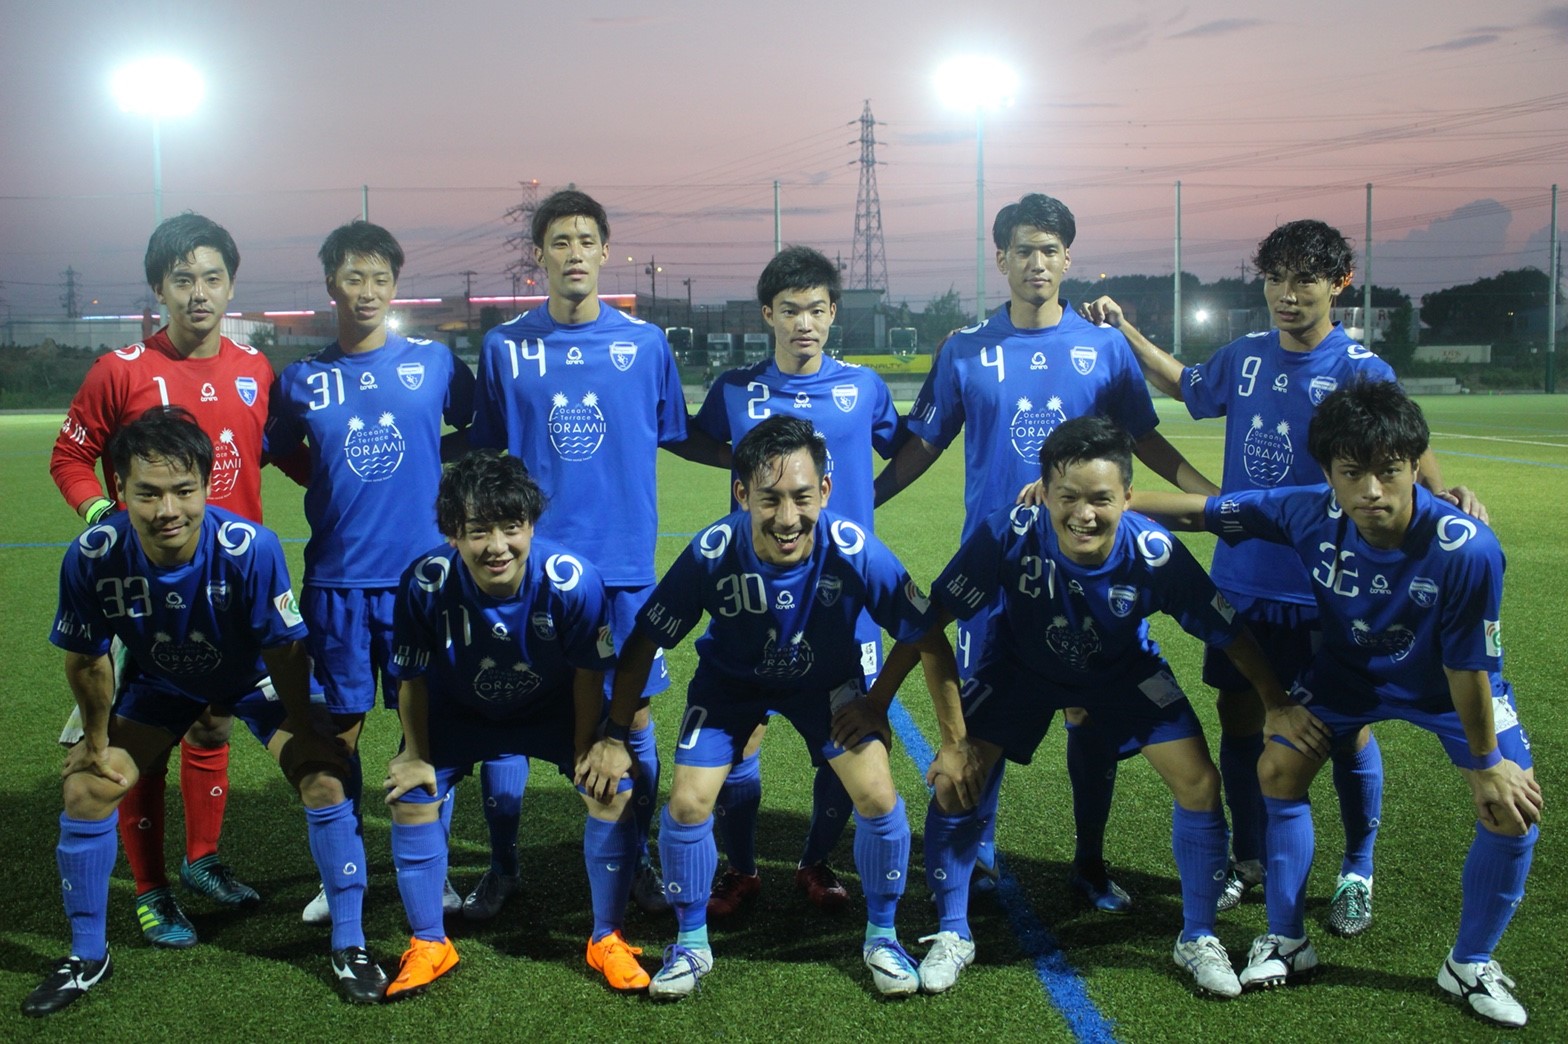 Club 品川cc カルチャークラブ 総合型地域スポーツクラブ